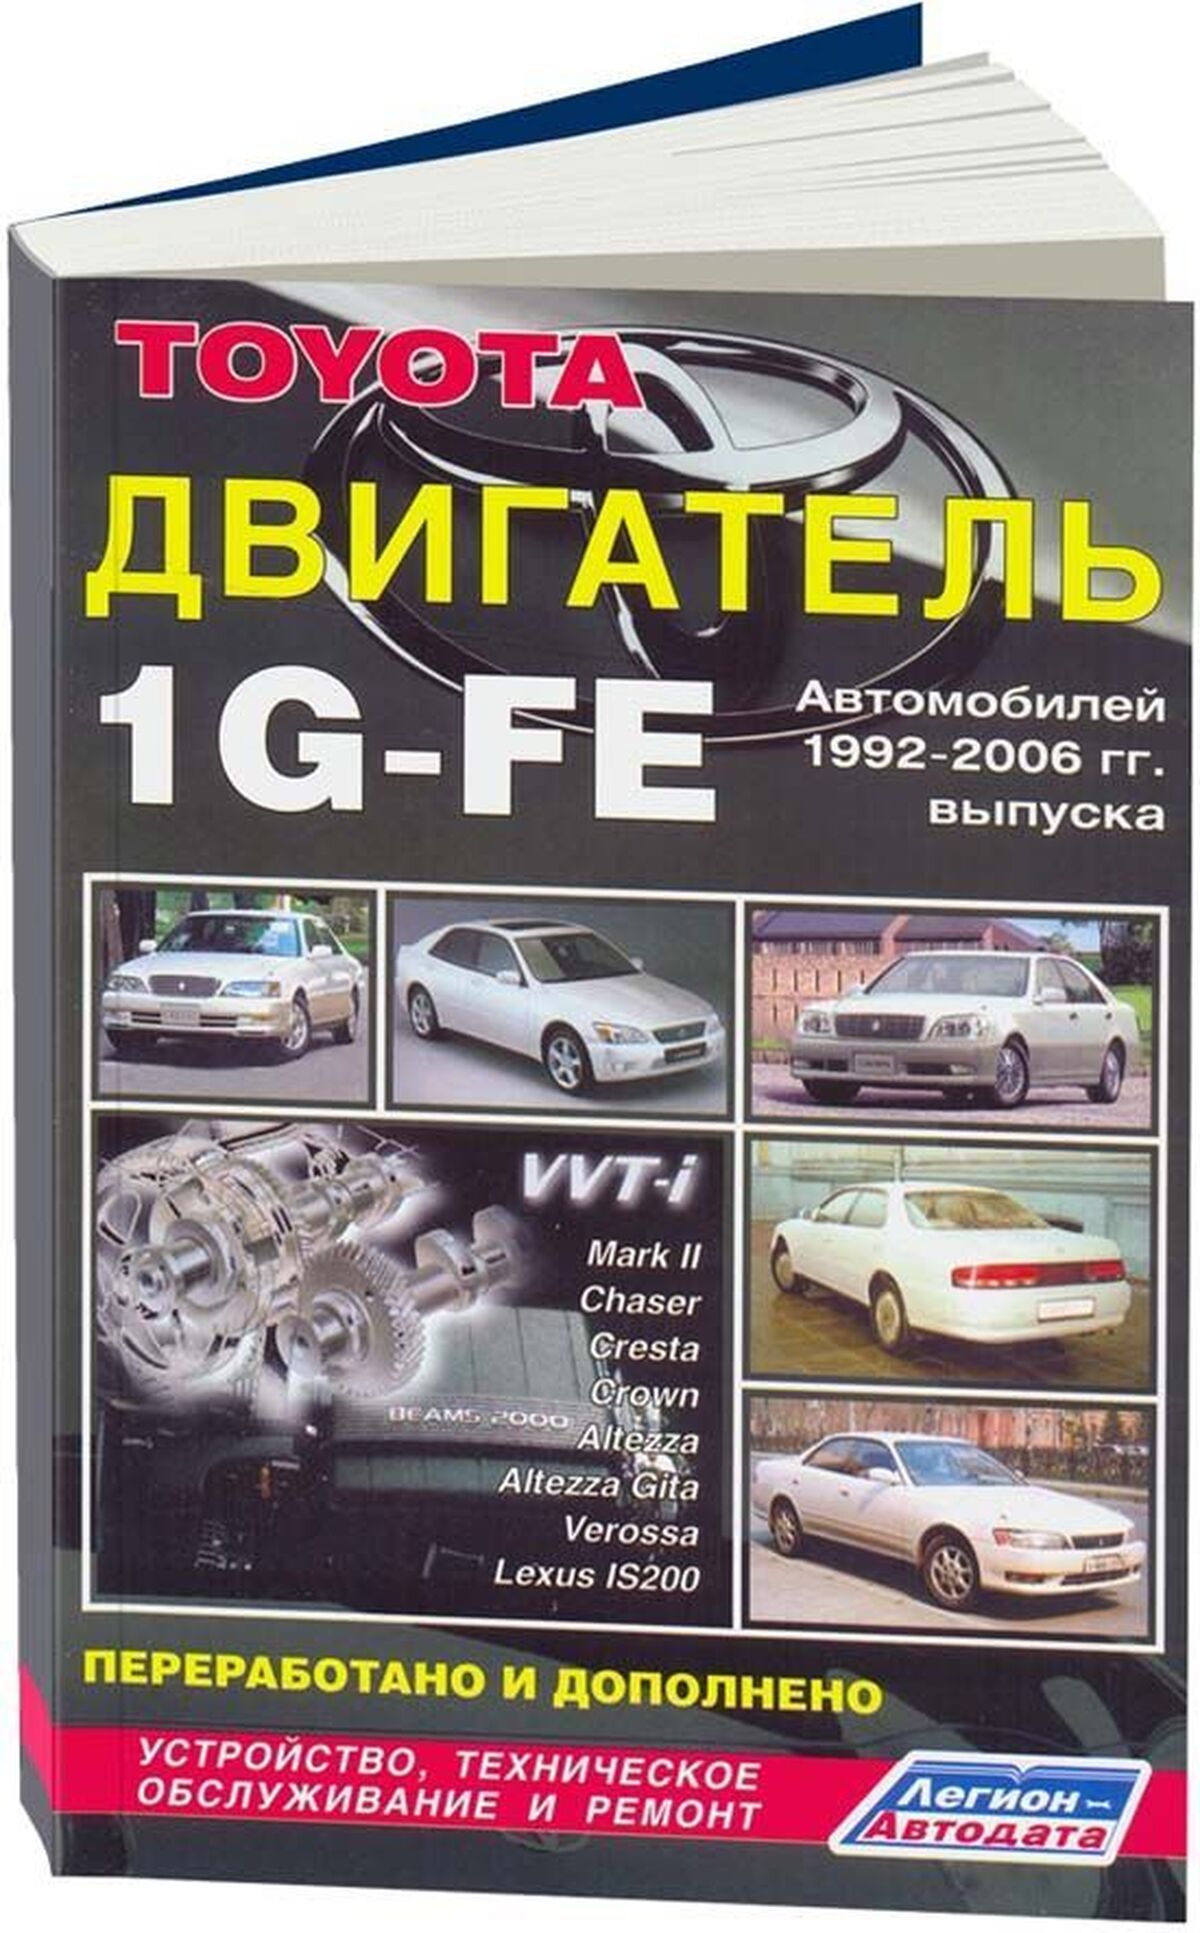 Книга: Двигатели TOYOTA 1G-FE, рем., то | Легион-Aвтодата